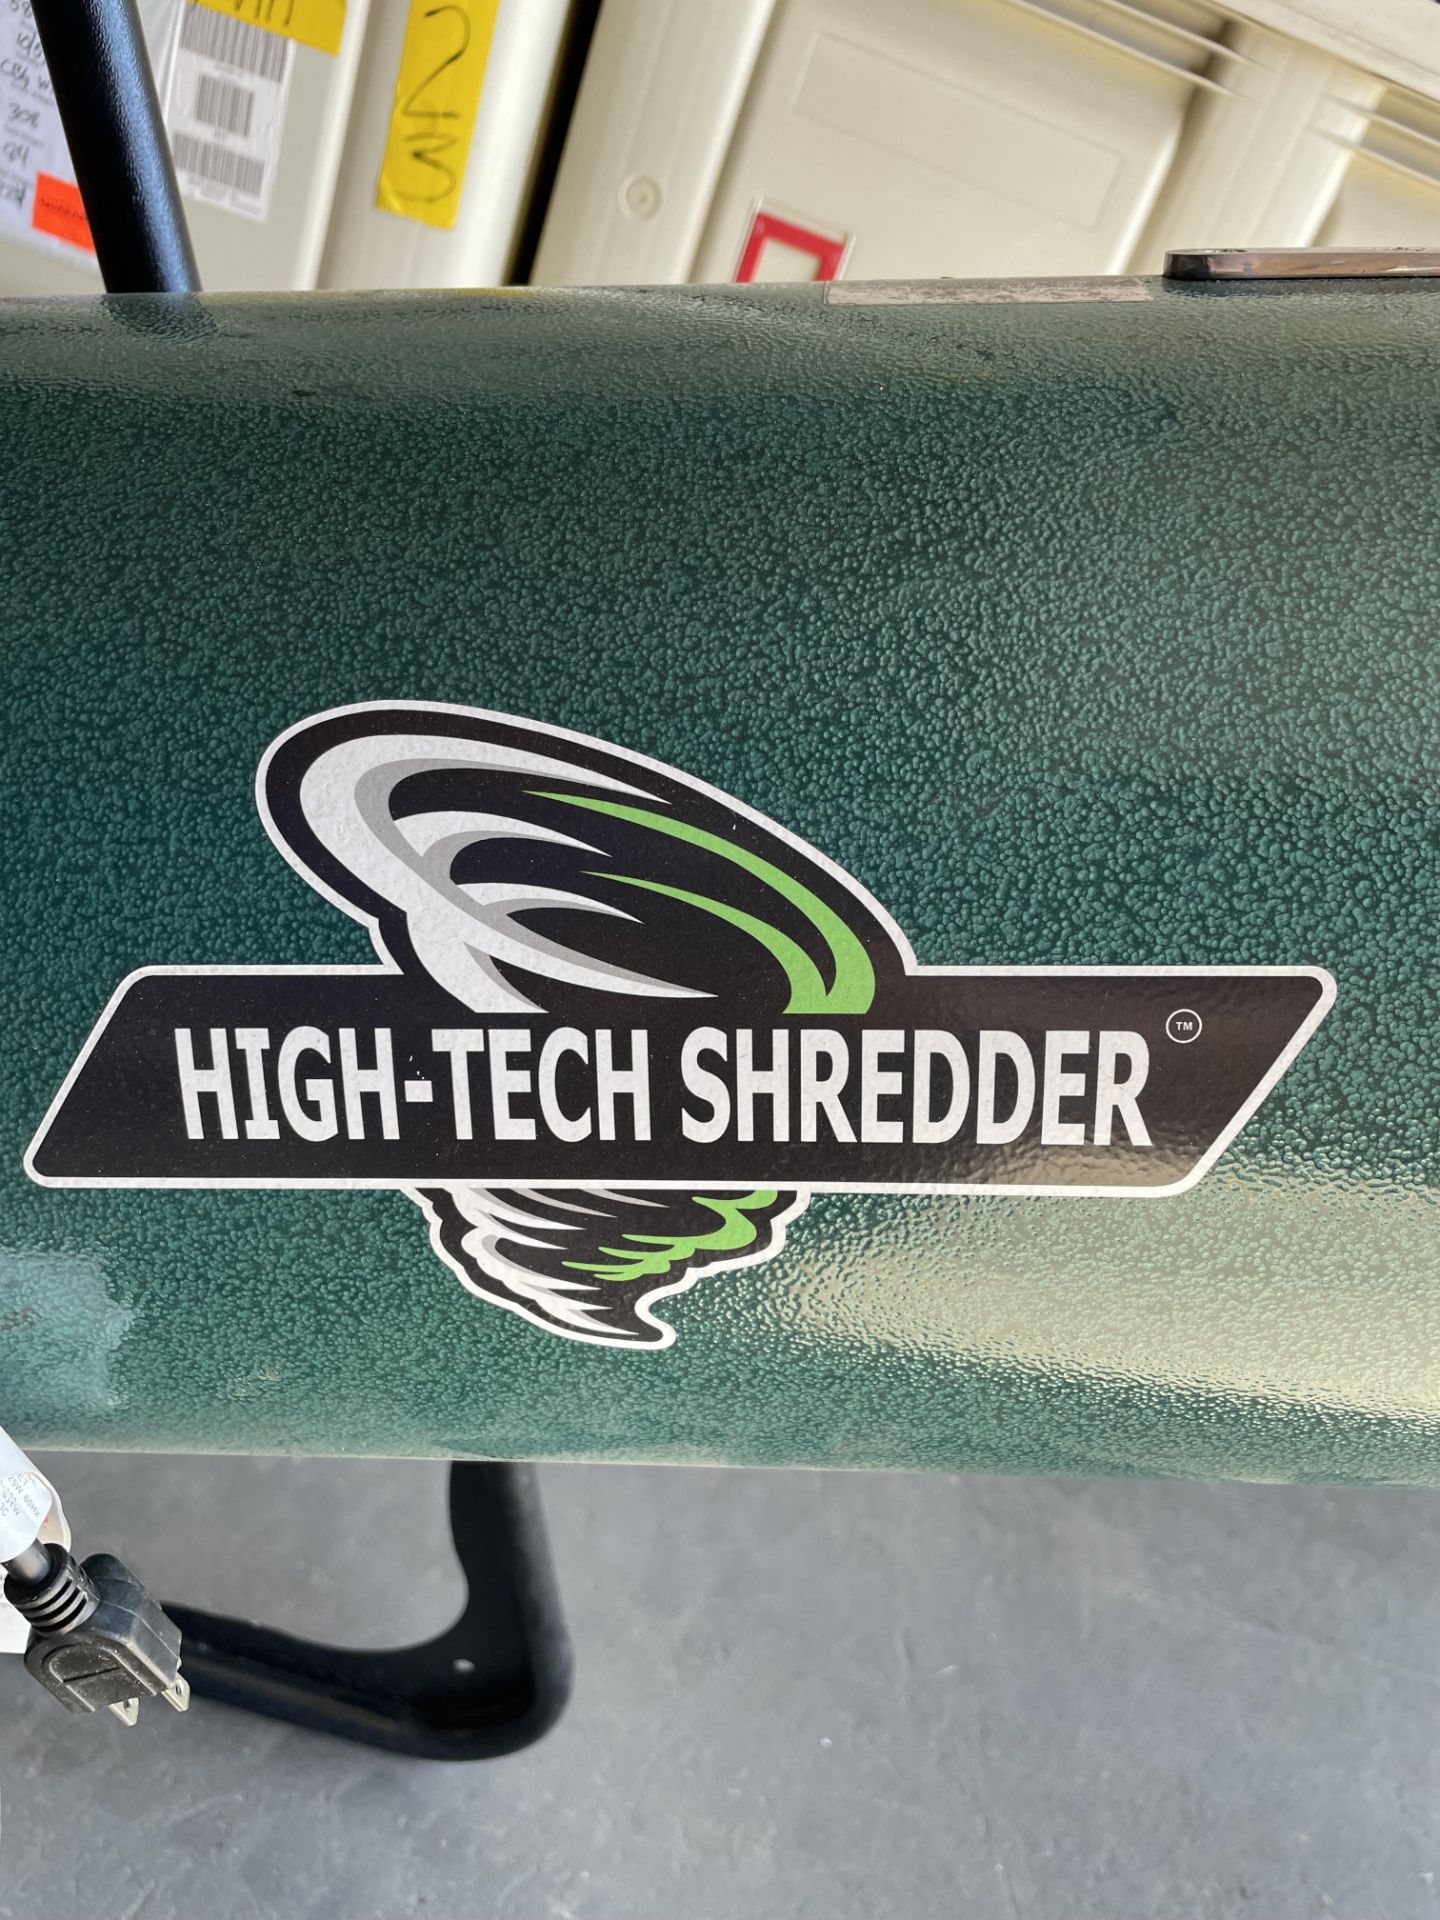 Used High-Tech 3 lb Shredder/Grinder. Model 110-CUP / HTSH110 - Bild 3 aus 4